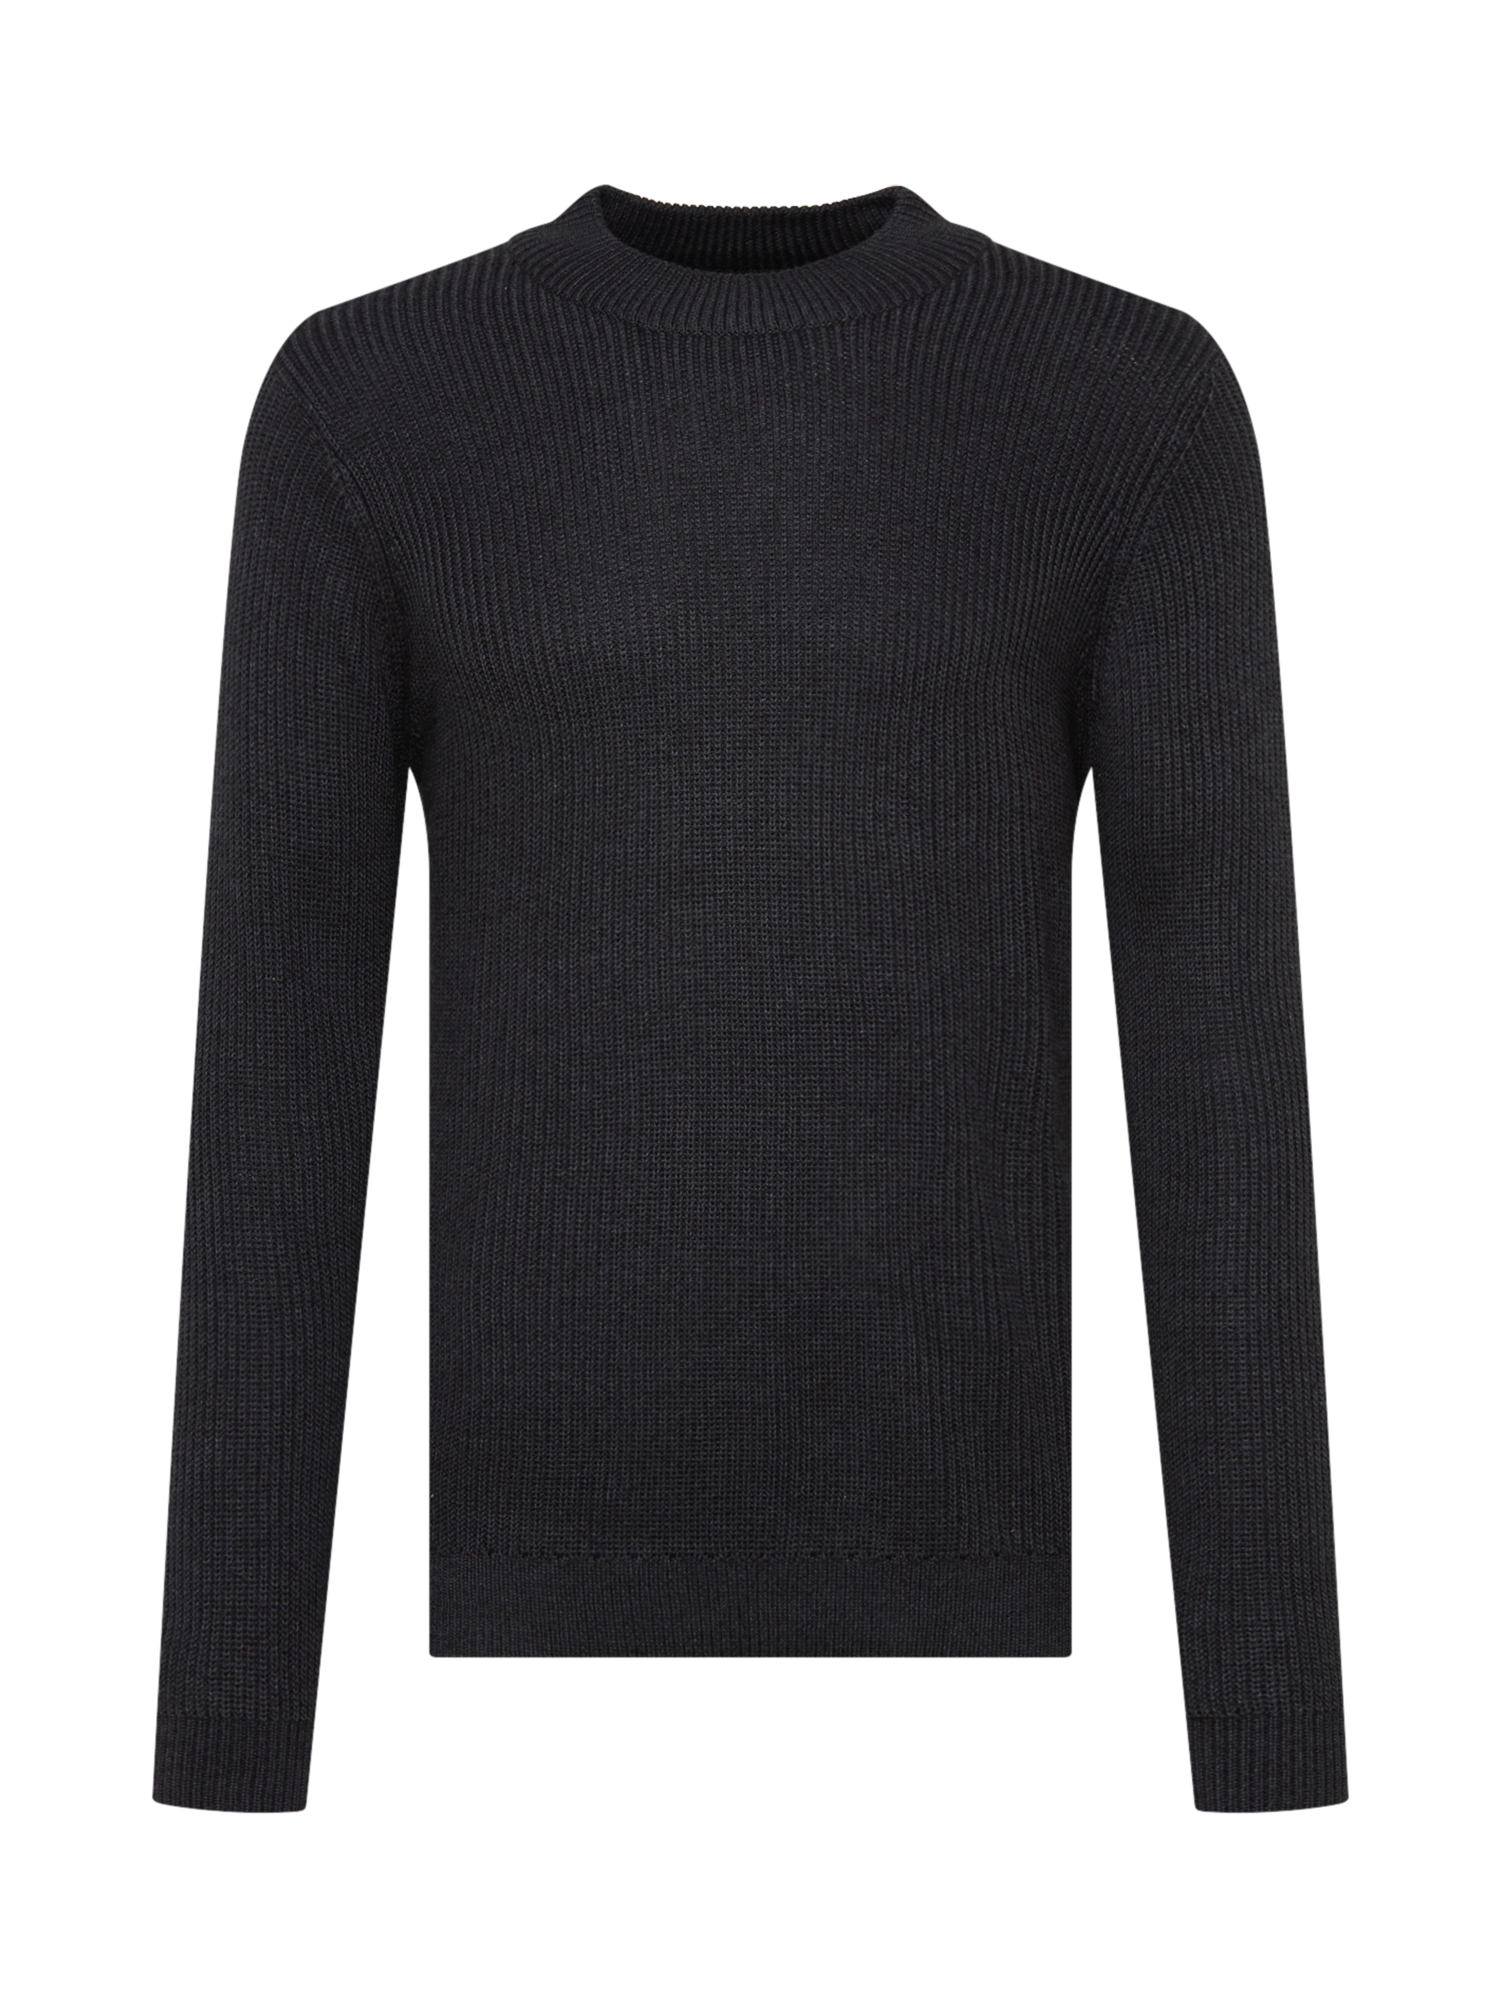 Swetry & kardigany Odzież Redefined Rebel Sweter Kevin w kolorze Antracytowym 